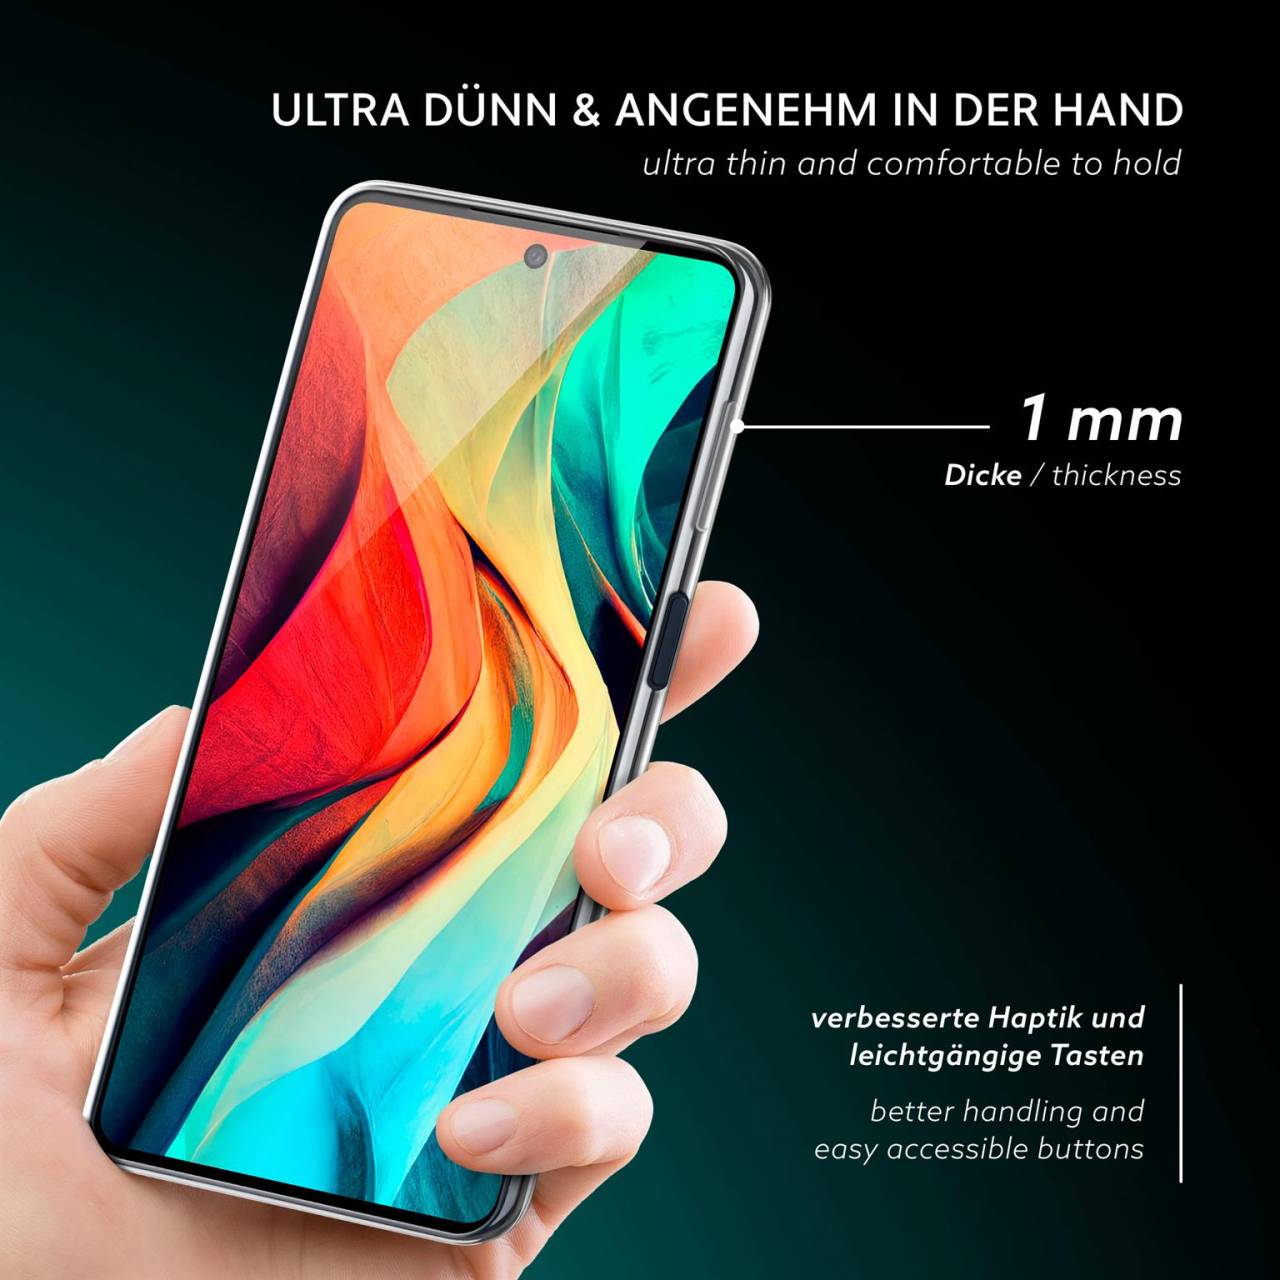 moex Aero Case für Samsung Galaxy M22 – Durchsichtige Hülle aus Silikon, Ultra Slim Handyhülle